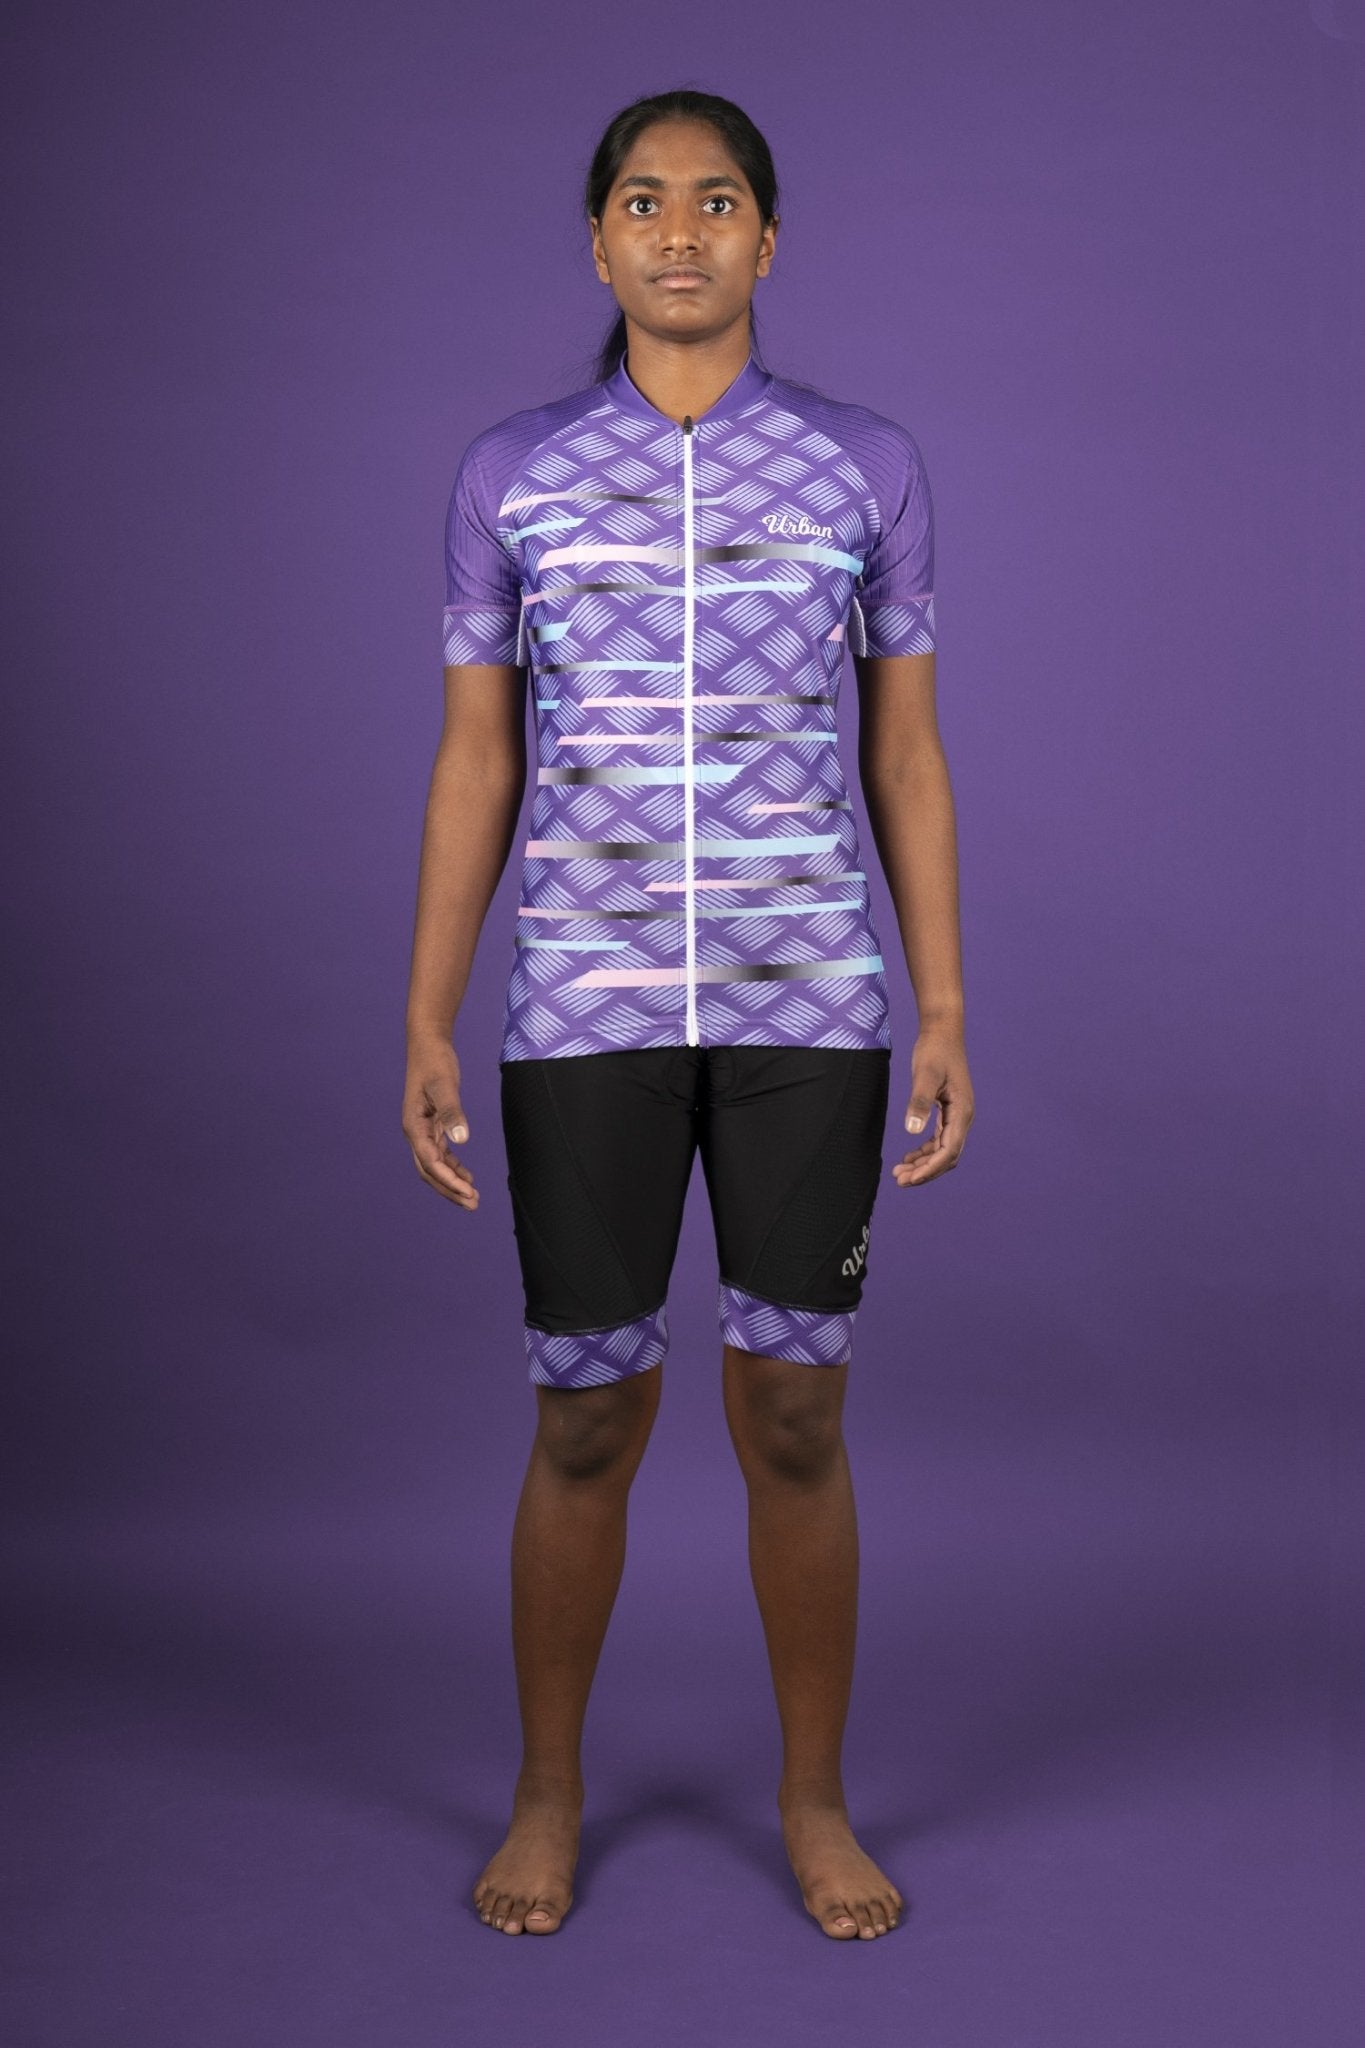 https://urbancycling.com/cdn/shop/products/womens-pro-series-purple-cycling-short-sleeve-jersey-bib-shorts-or-kit-bundle-170845_2048x.jpg?v=1668027080